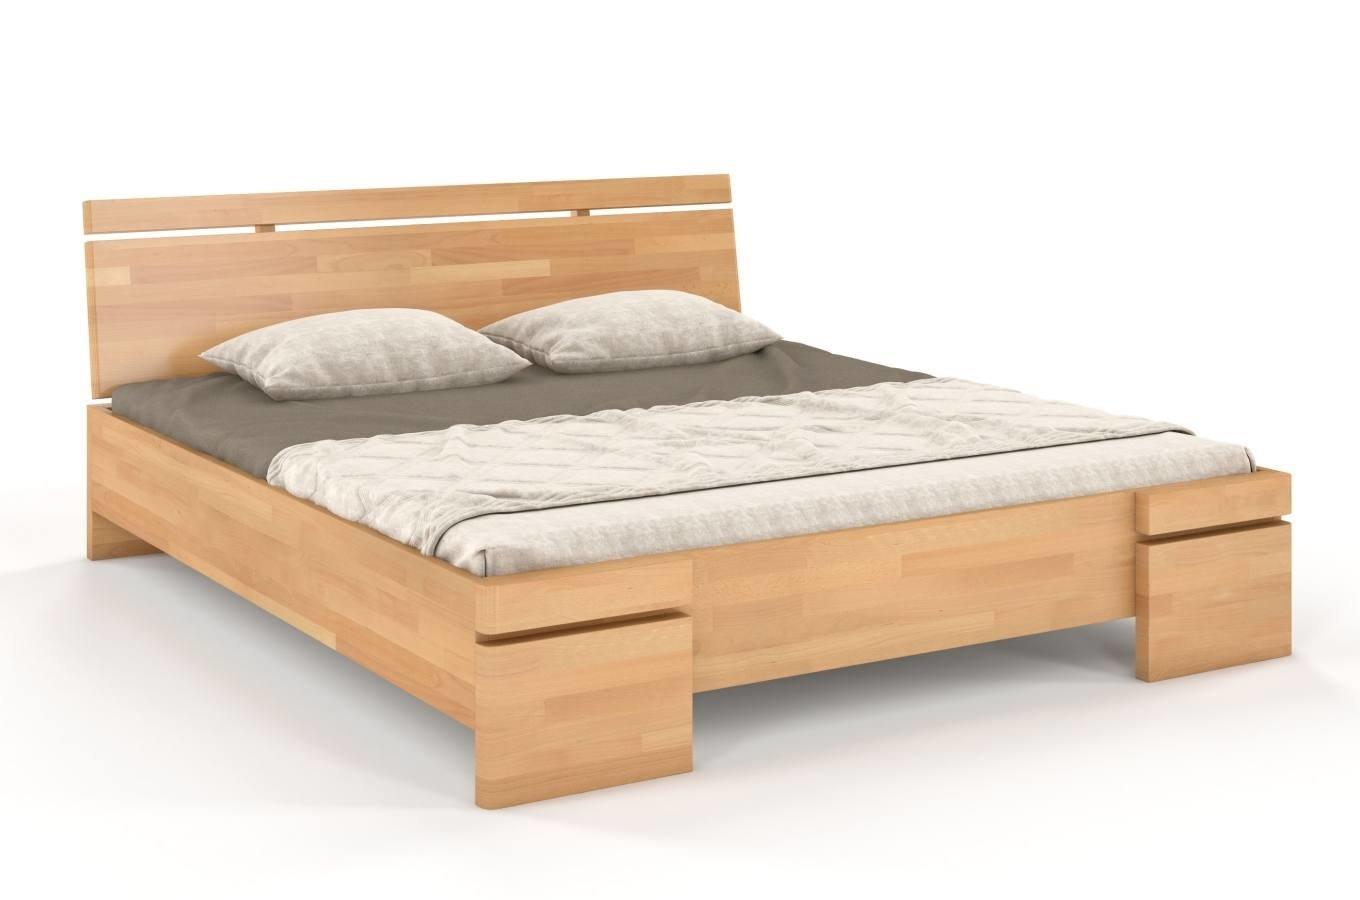 Łóżko drewniane bukowe Skandica SPARTA Maxi & Long / 140x220 cm, kolor naturalny